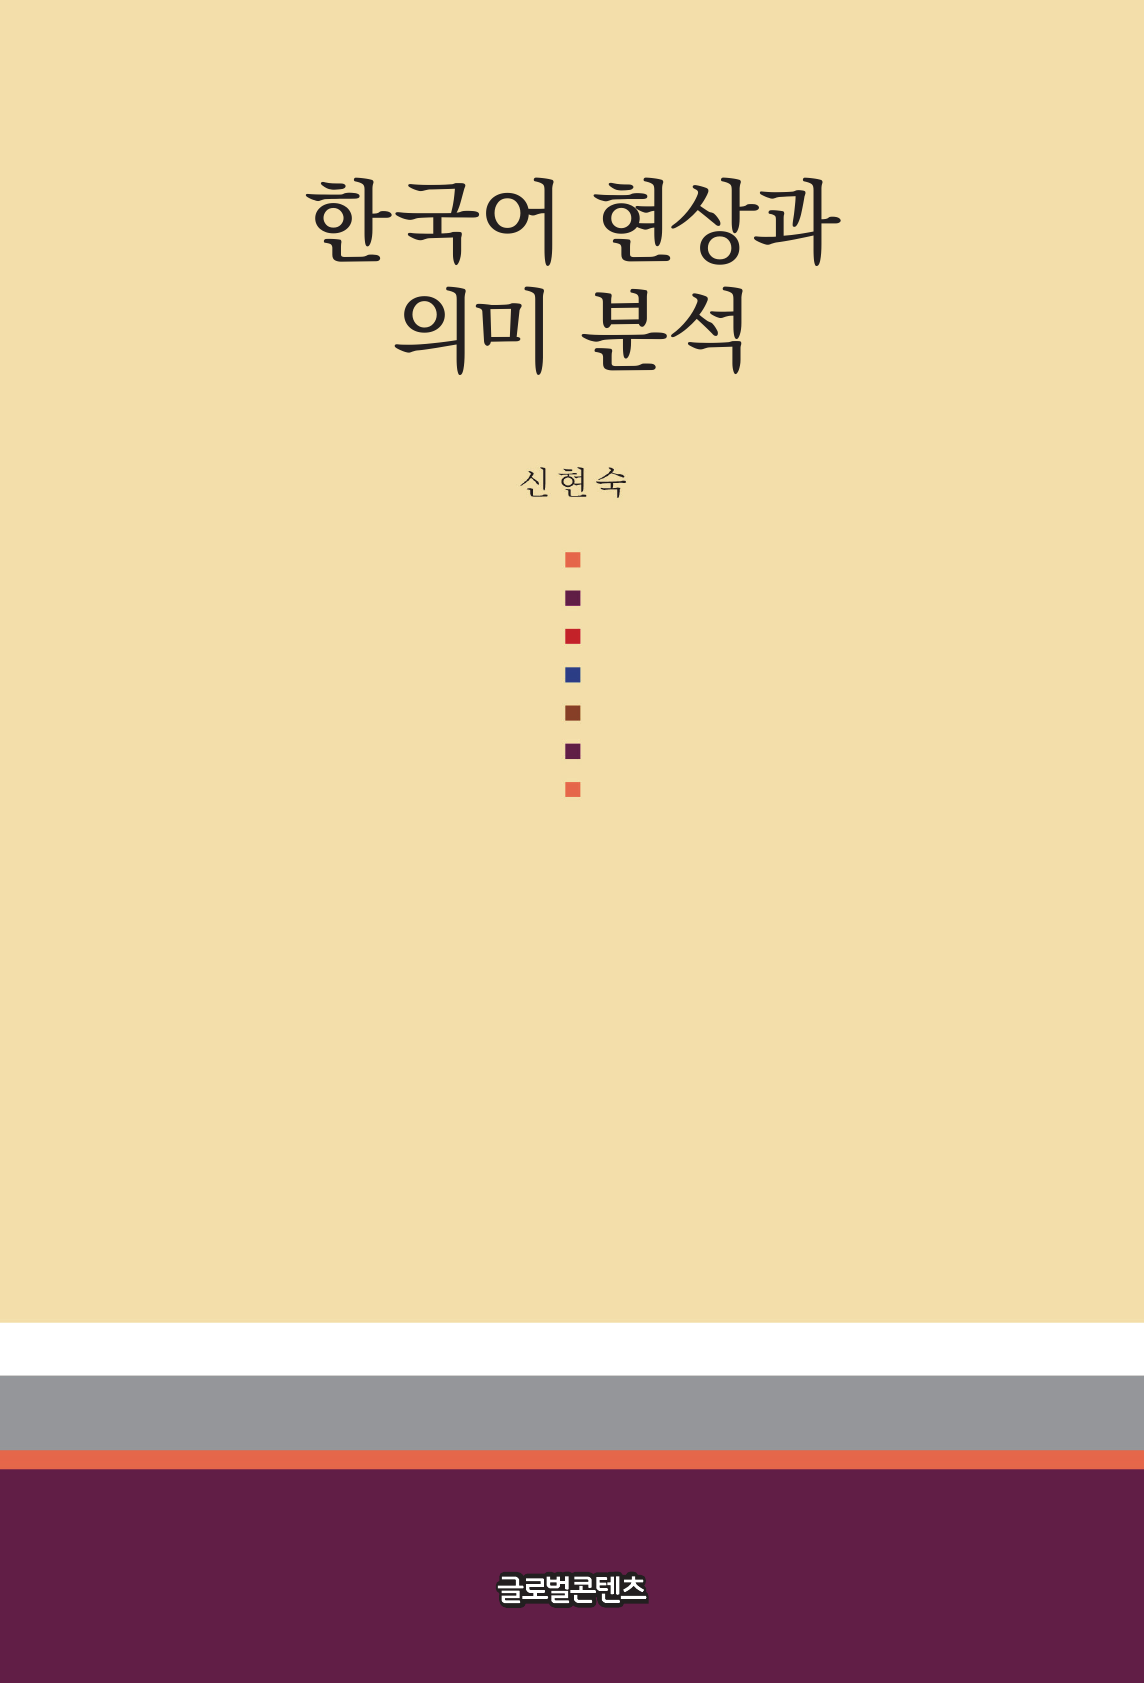 한국어 현상과 의미 분석